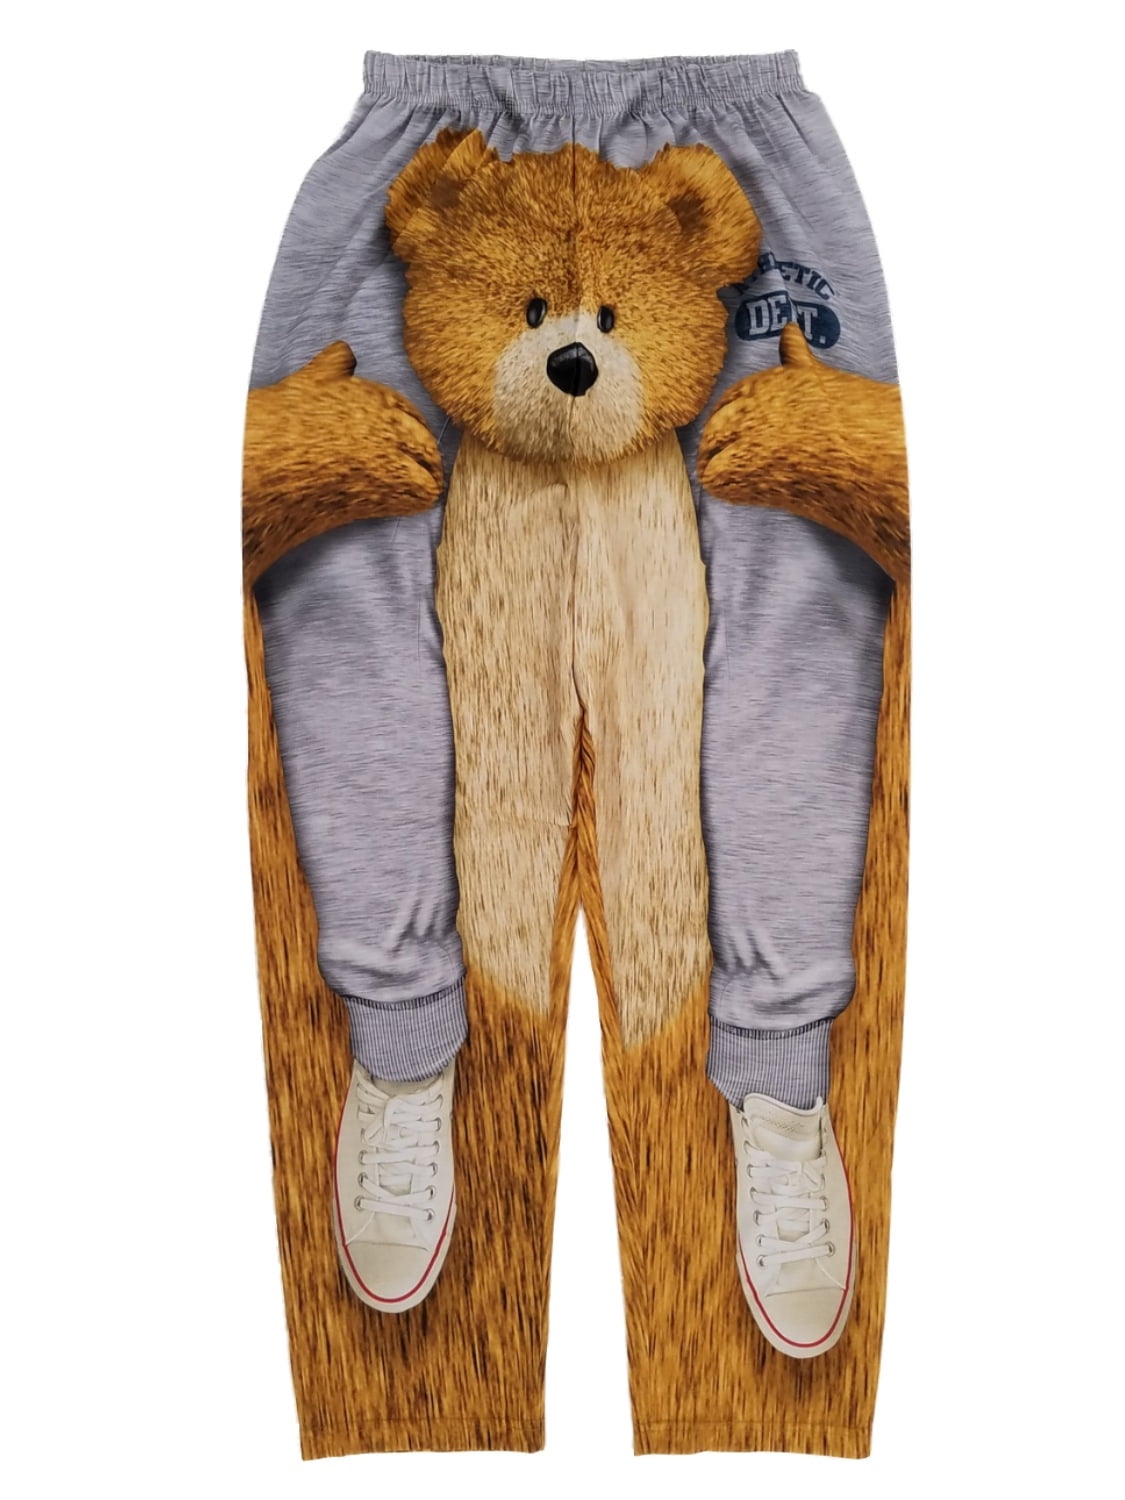 Mens Gray Teddy Bear Ride Lounge Pants Sleep Pants Pajama Bottoms Small